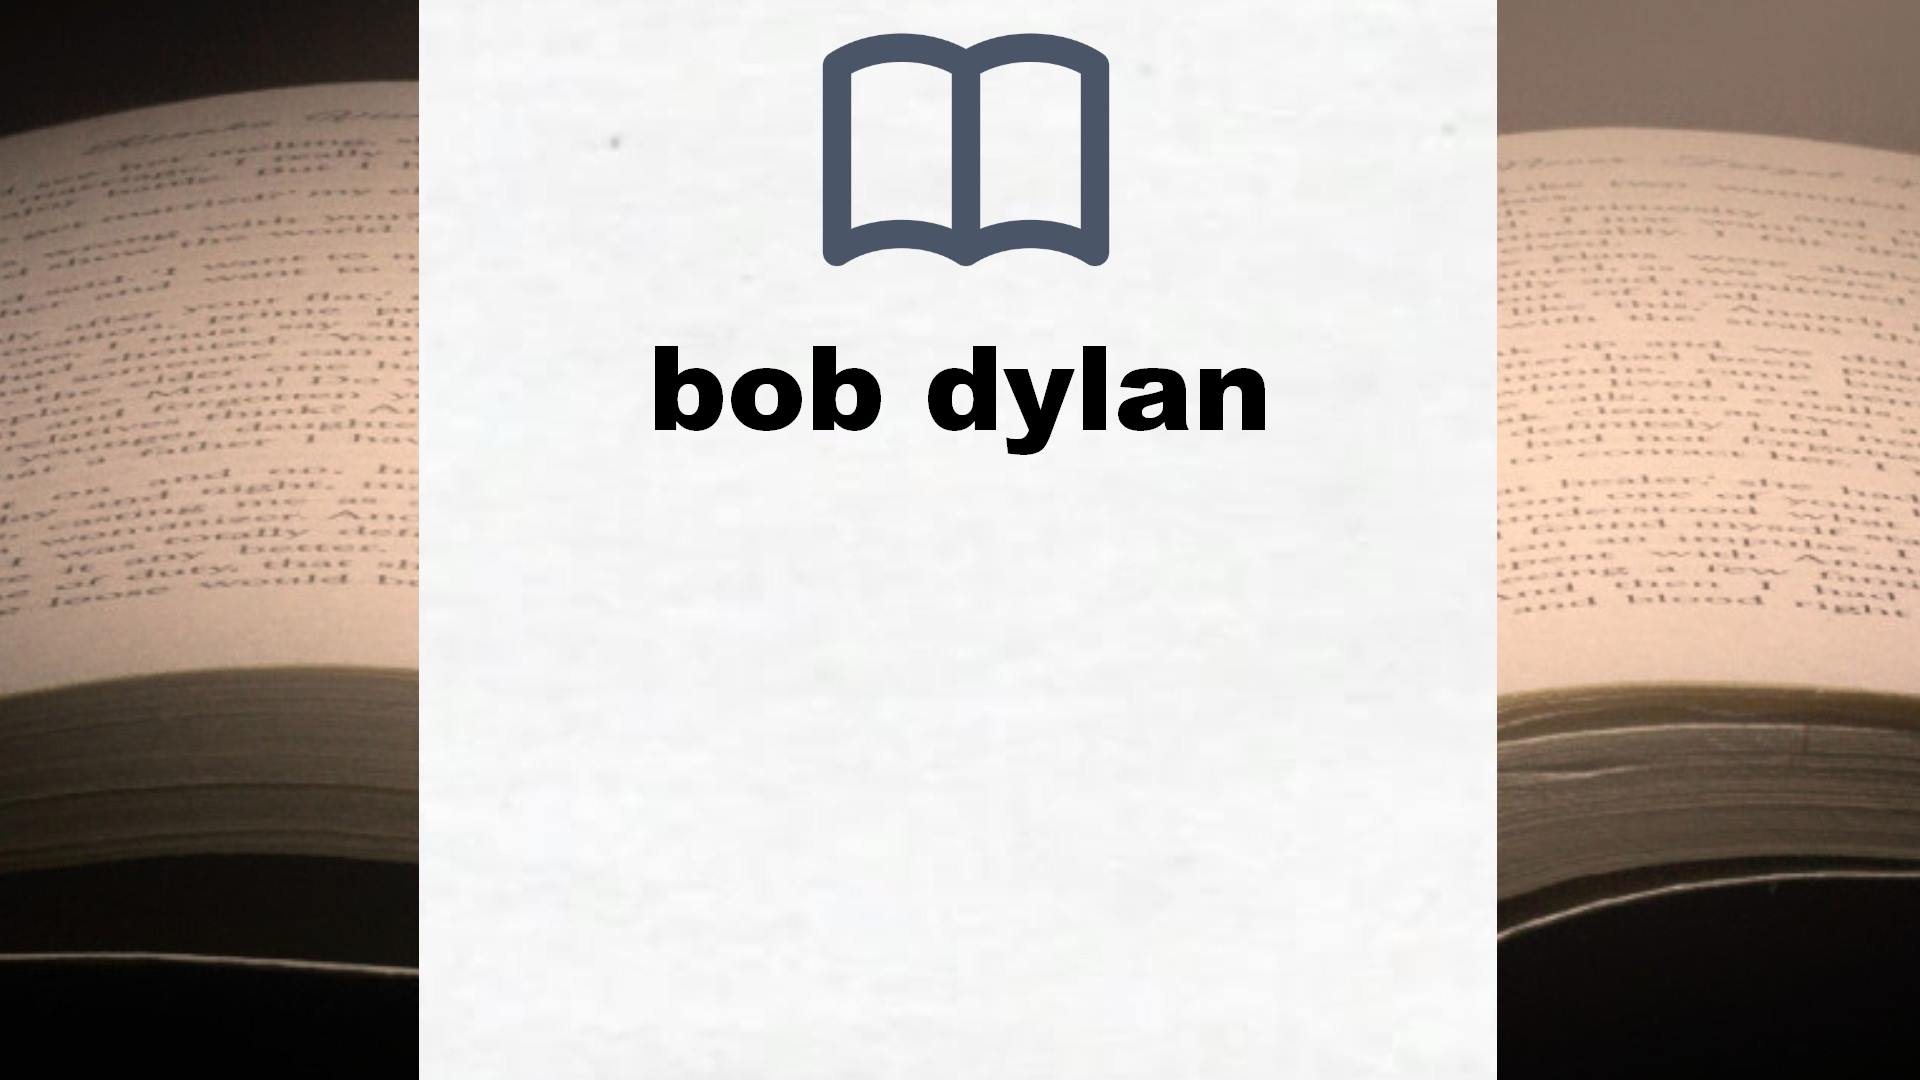 Libros sobre bob dylan